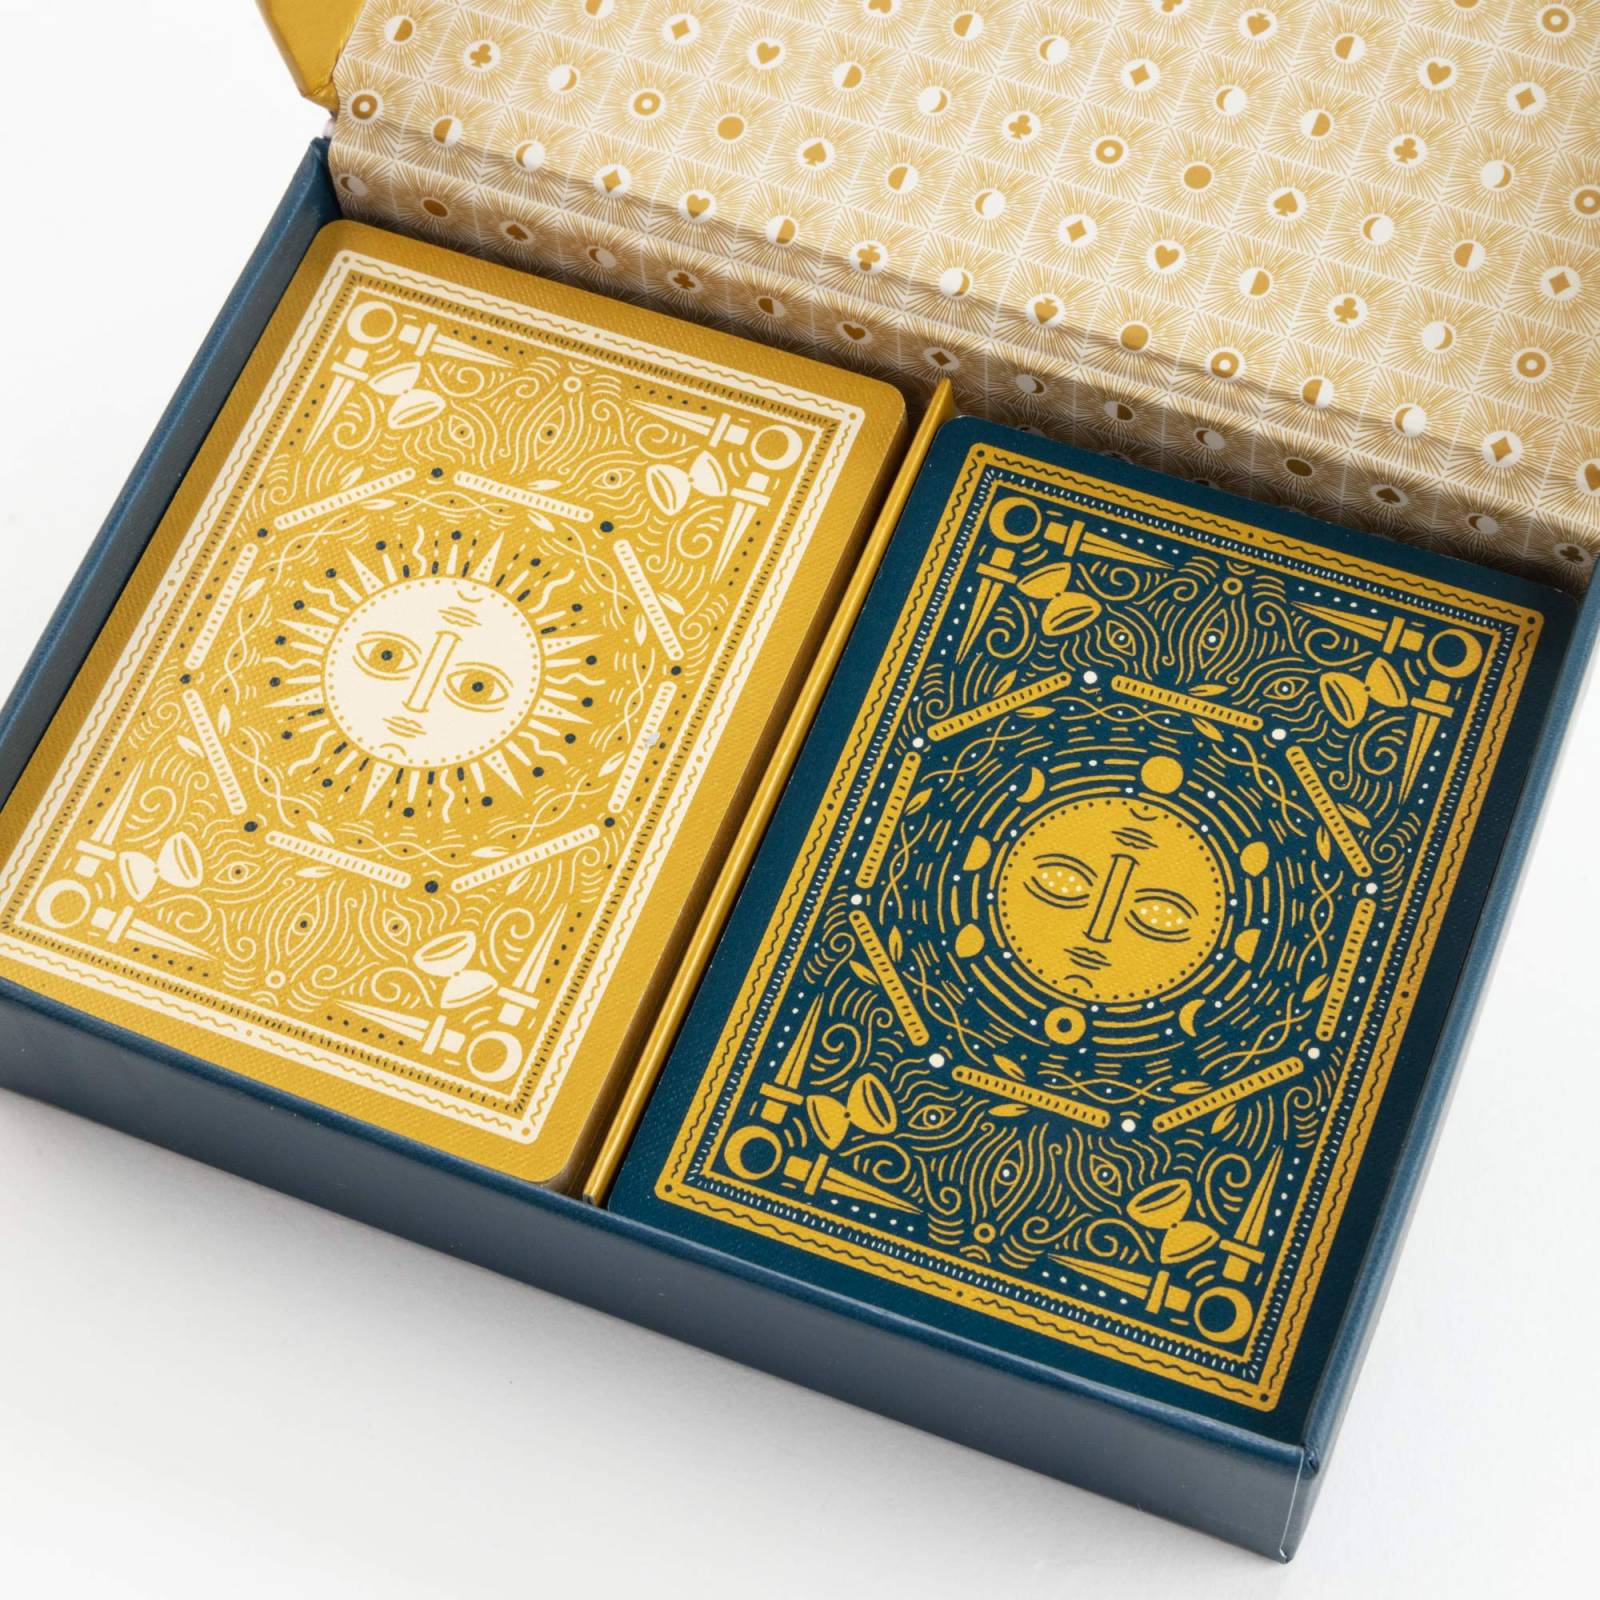 Boxed Set Of Illuminated Playing Cards thumbnails